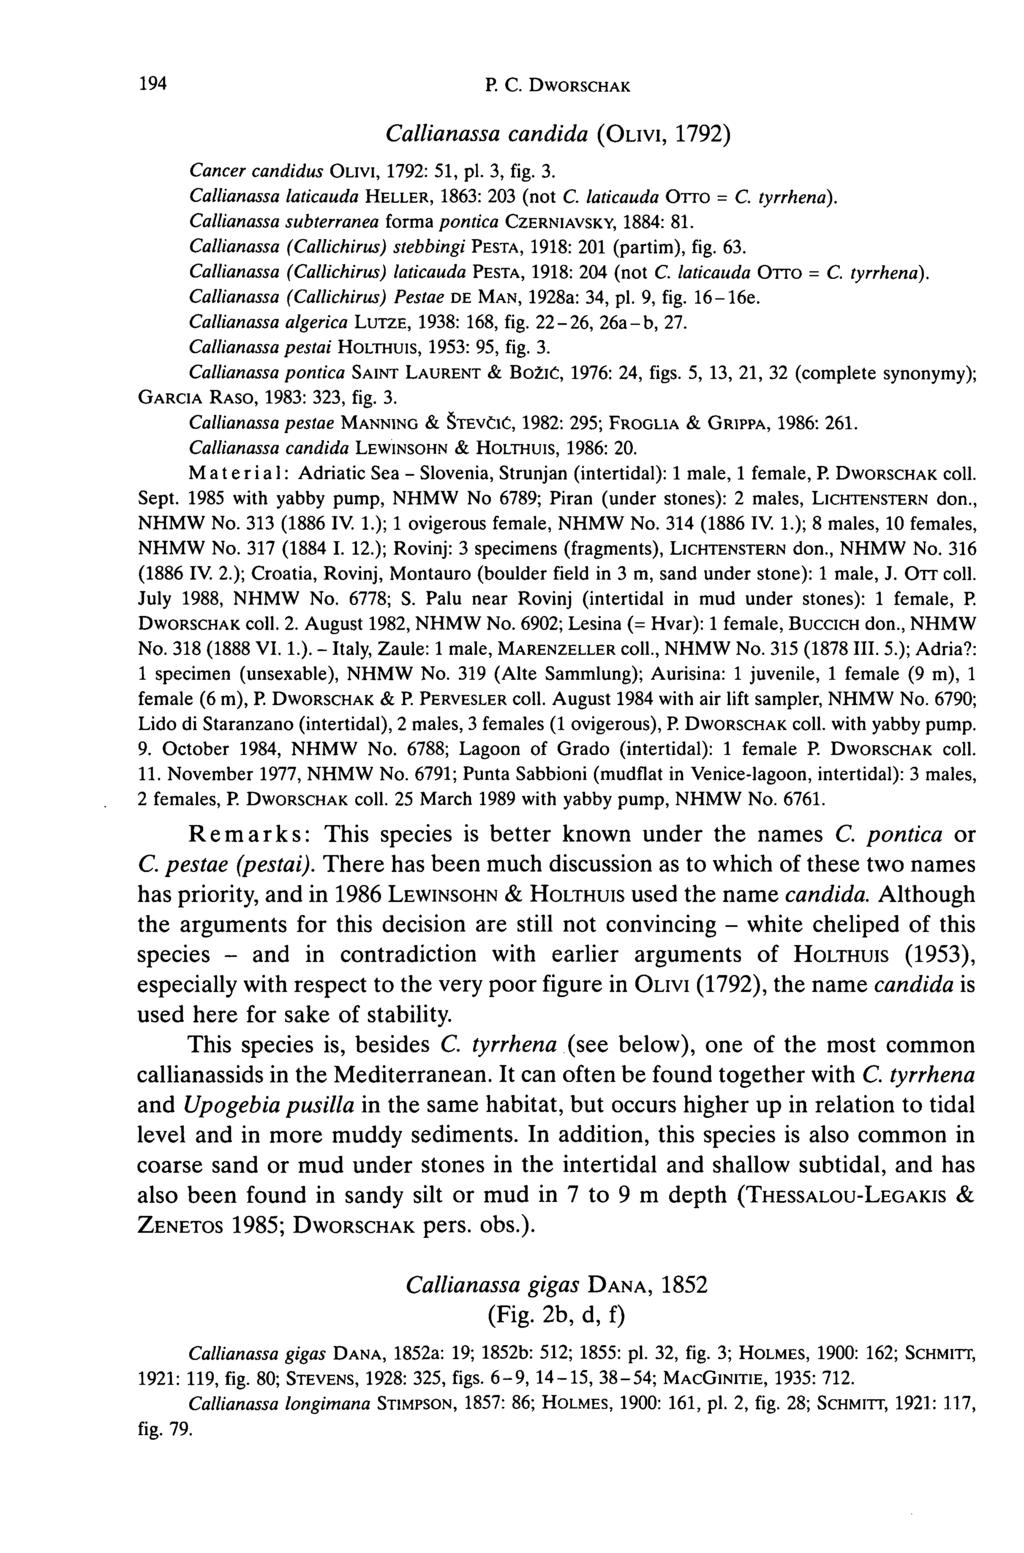 194 R C. DWORSCHAK Callianassa candida (OLIVI, 1792) Cancer candidus OLIVI, 1792: 51, pi. 3, fig. 3. Callianassa laticauda HELLER, 1863: 203 (not C. laticauda OTTO = C. tyrrhena).